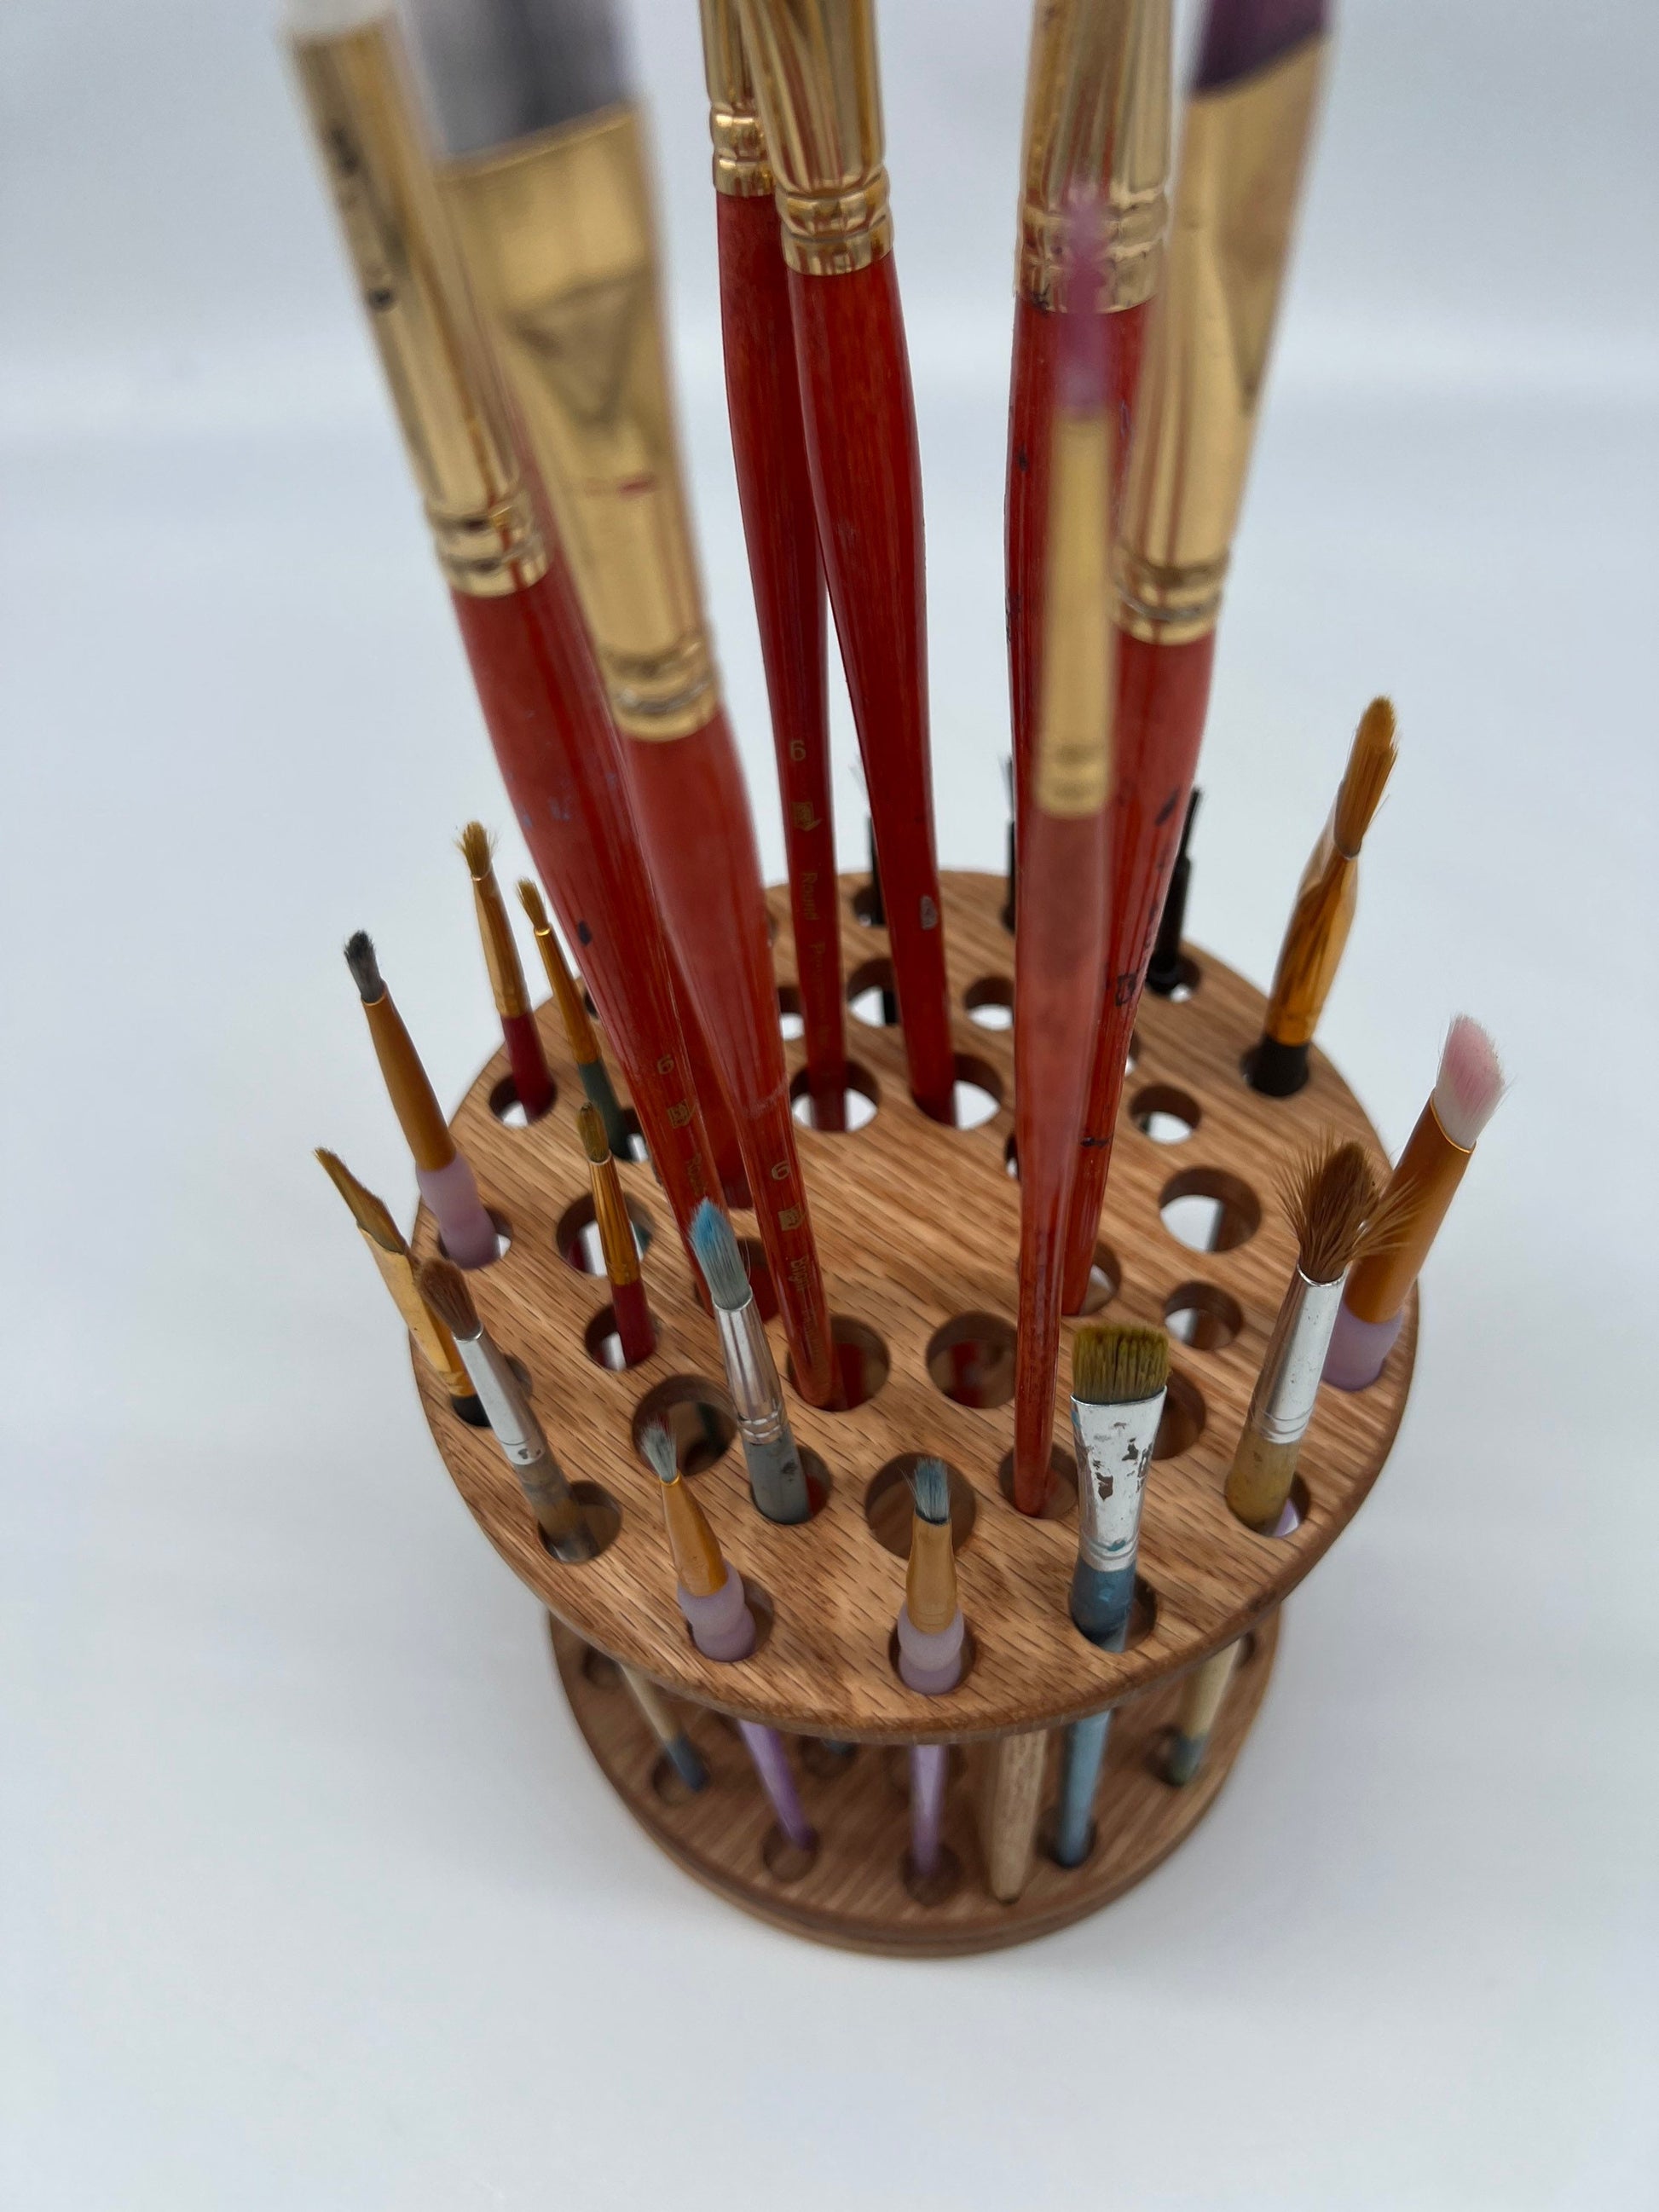 Rotating Paint Brush Holder Set, Handmade Paintbrush Holders 